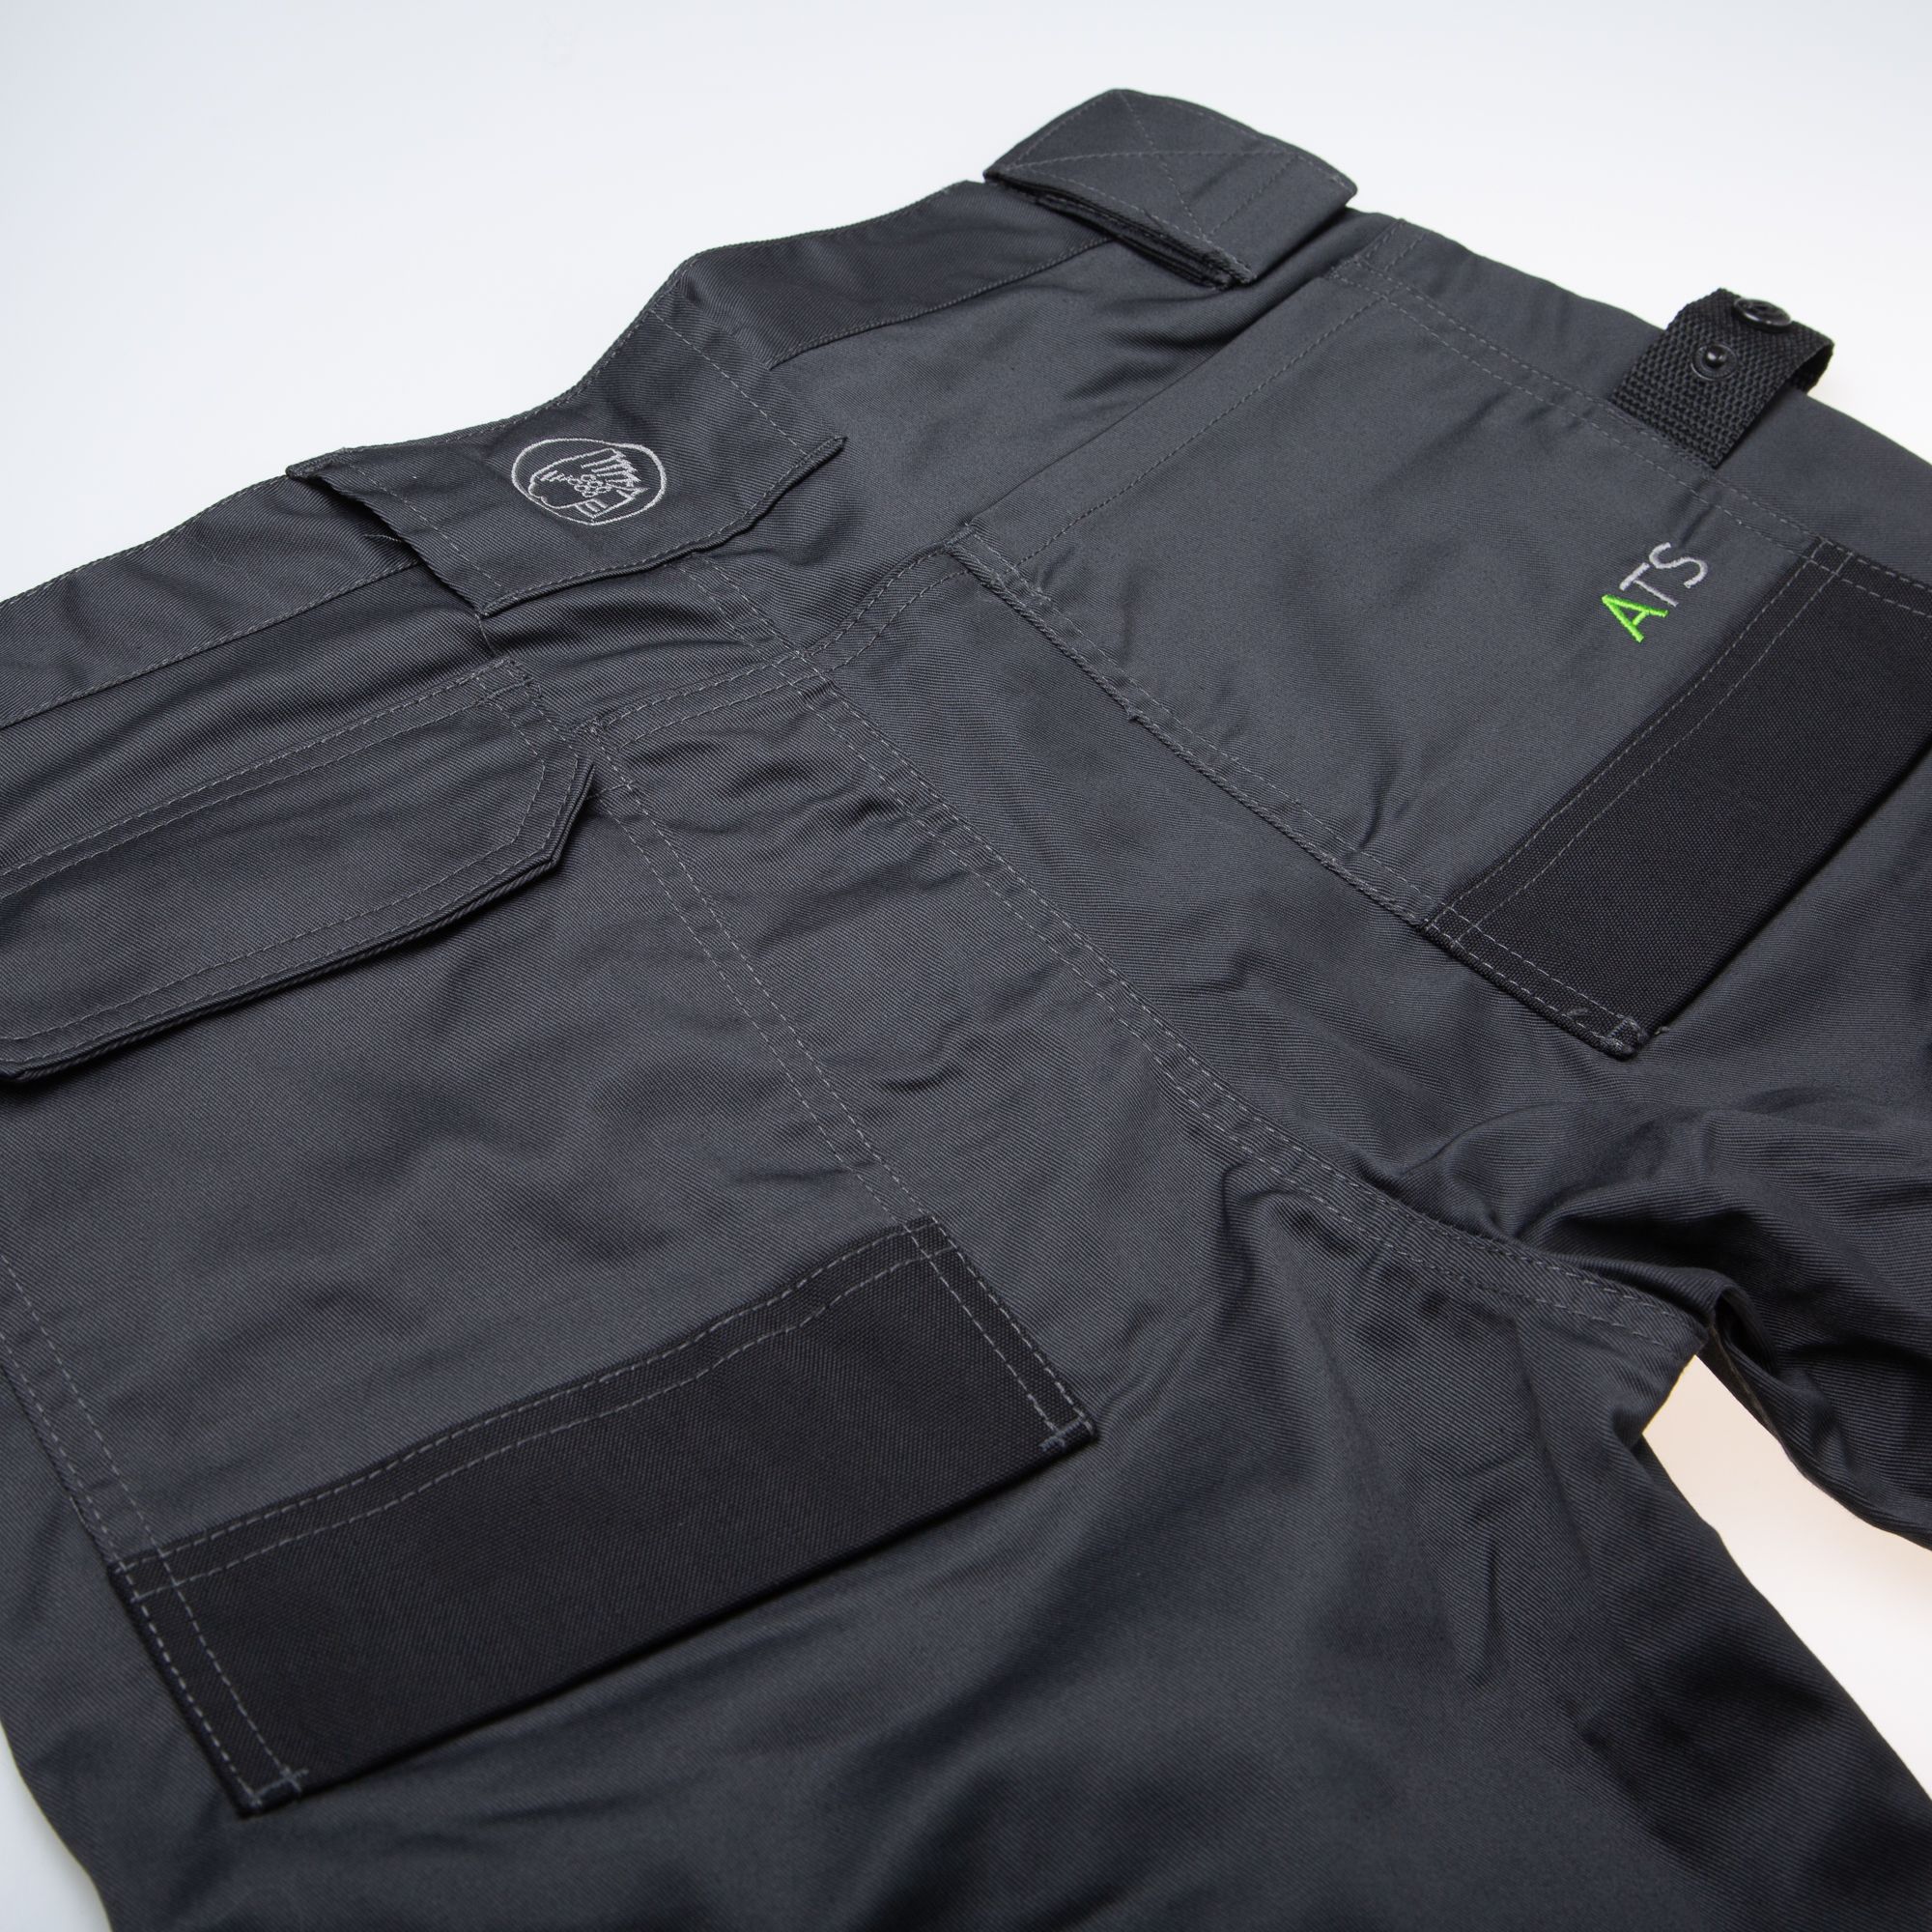 Apache Industrial Wear Grey & black Men's Holster pocket trousers, W36" L31"